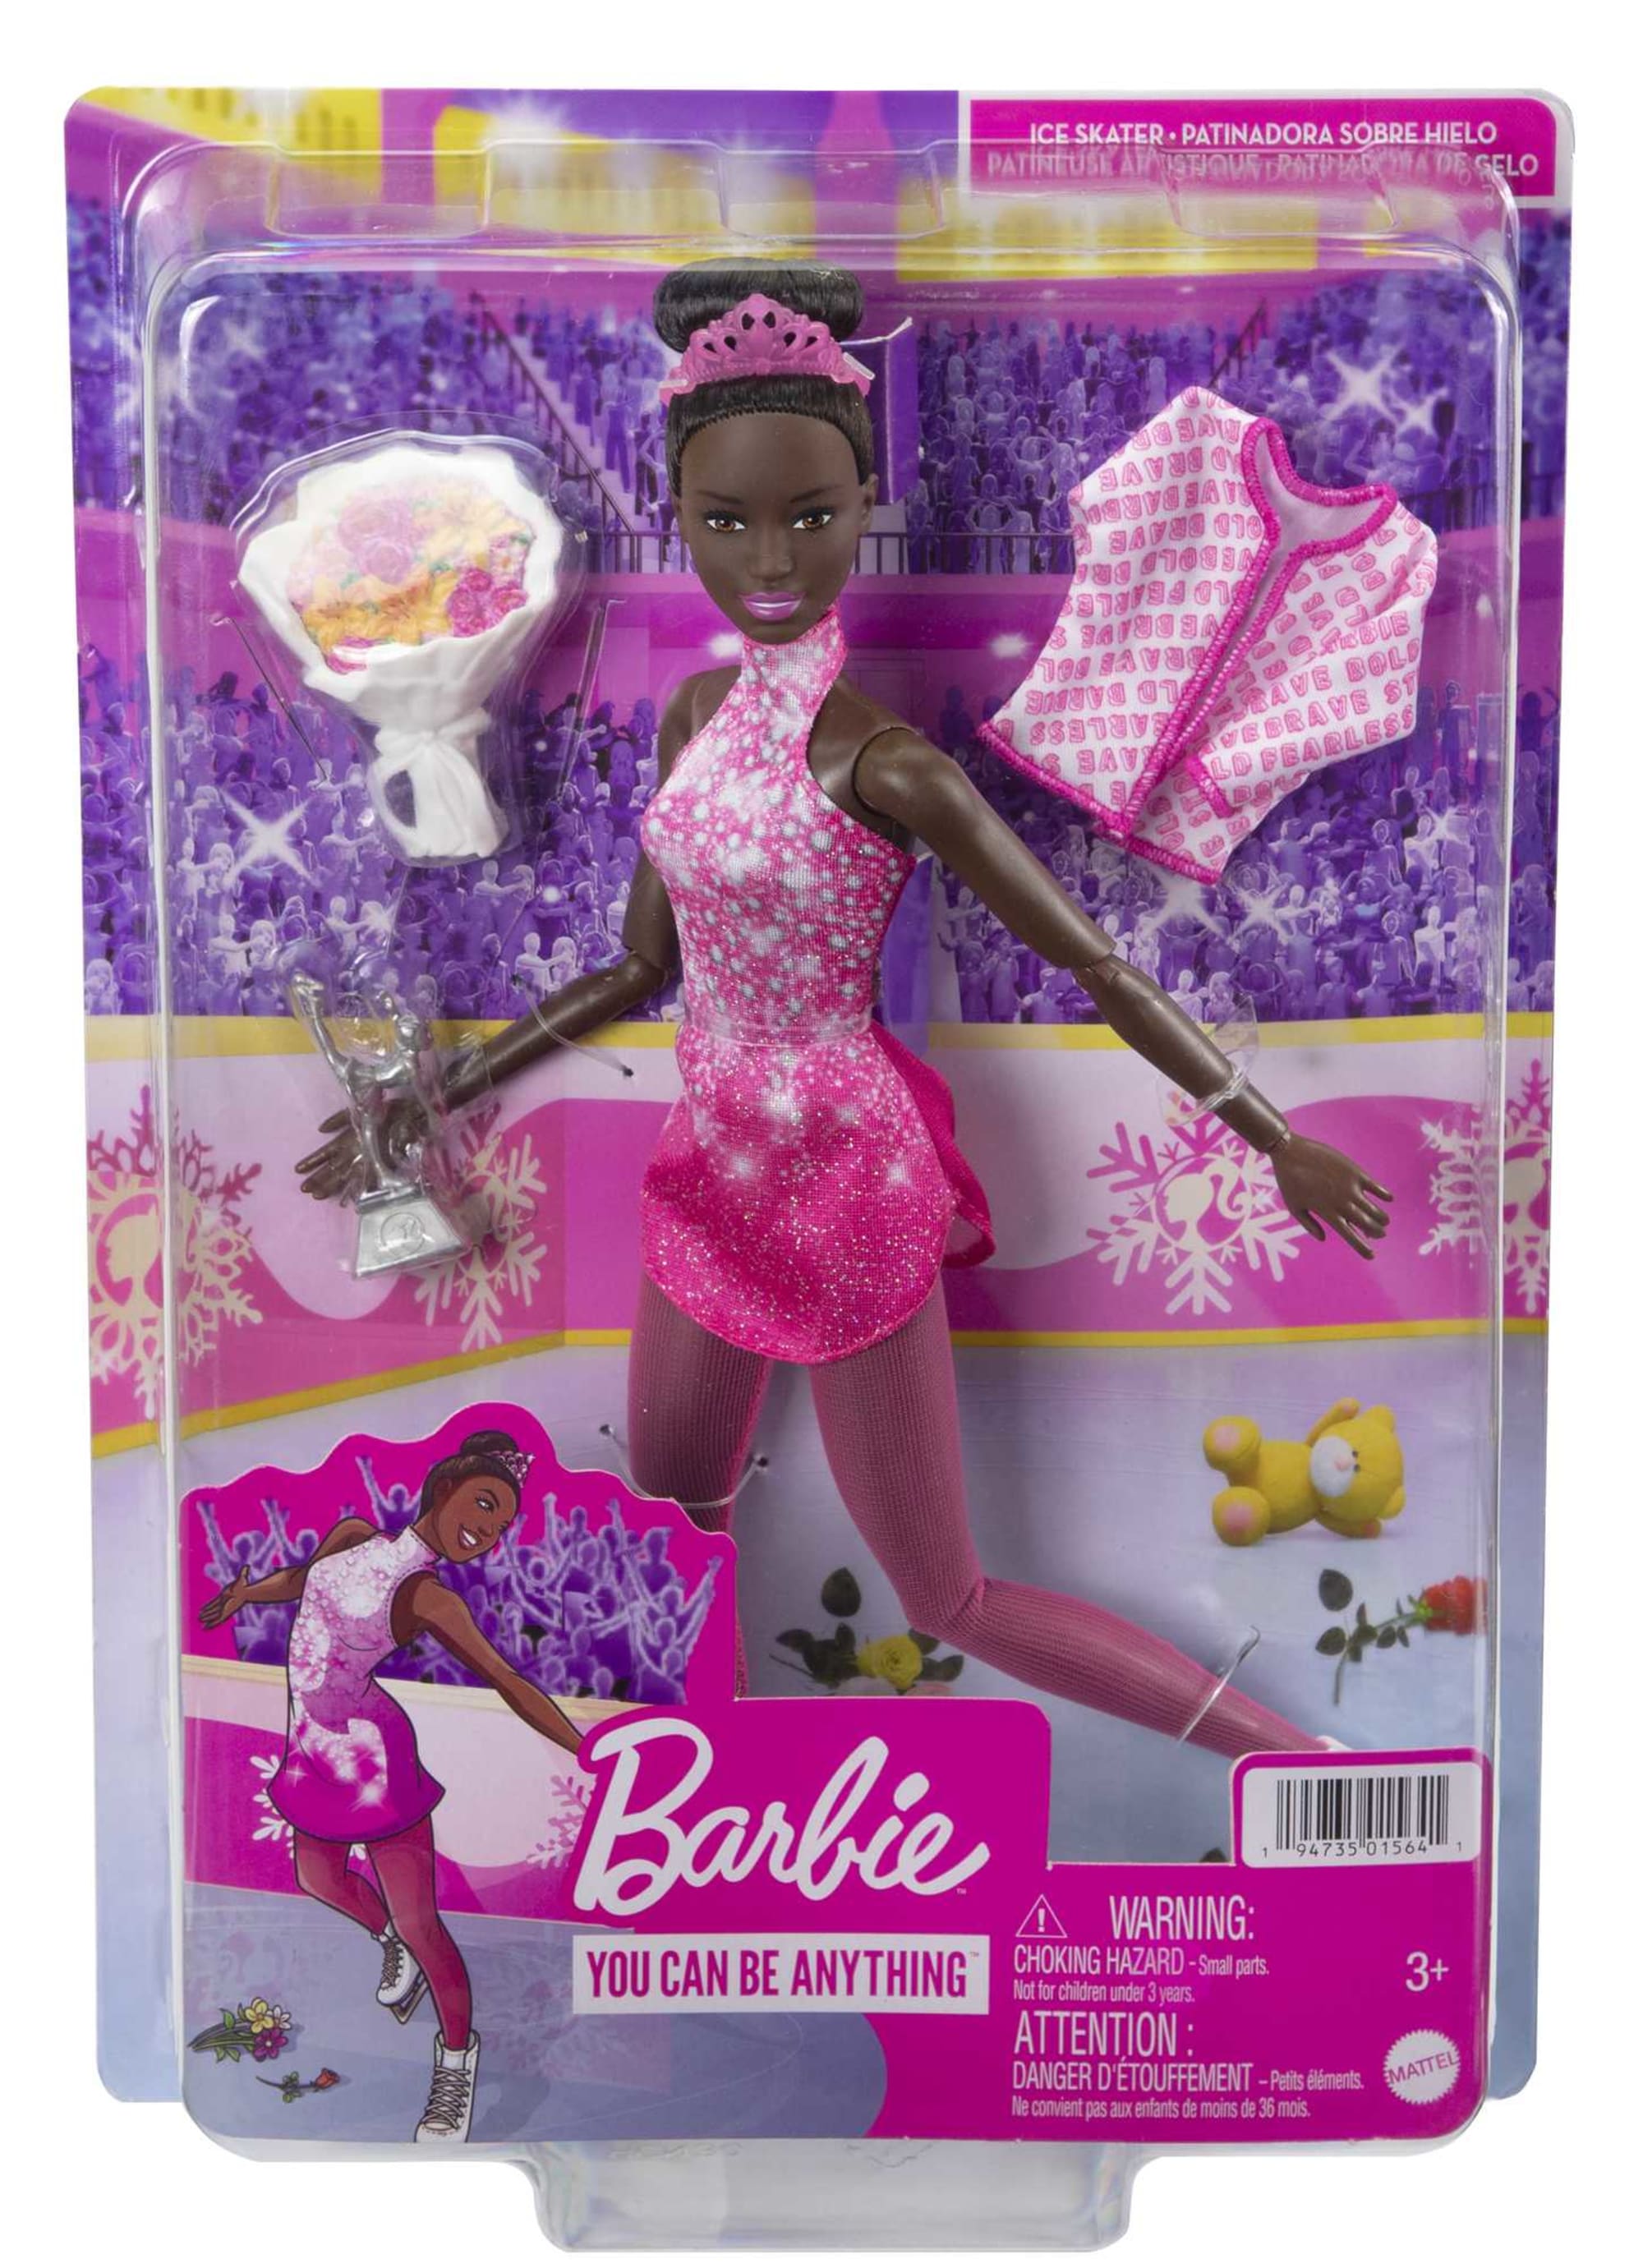 Barbie Ice Skater Player Doll | Mattel